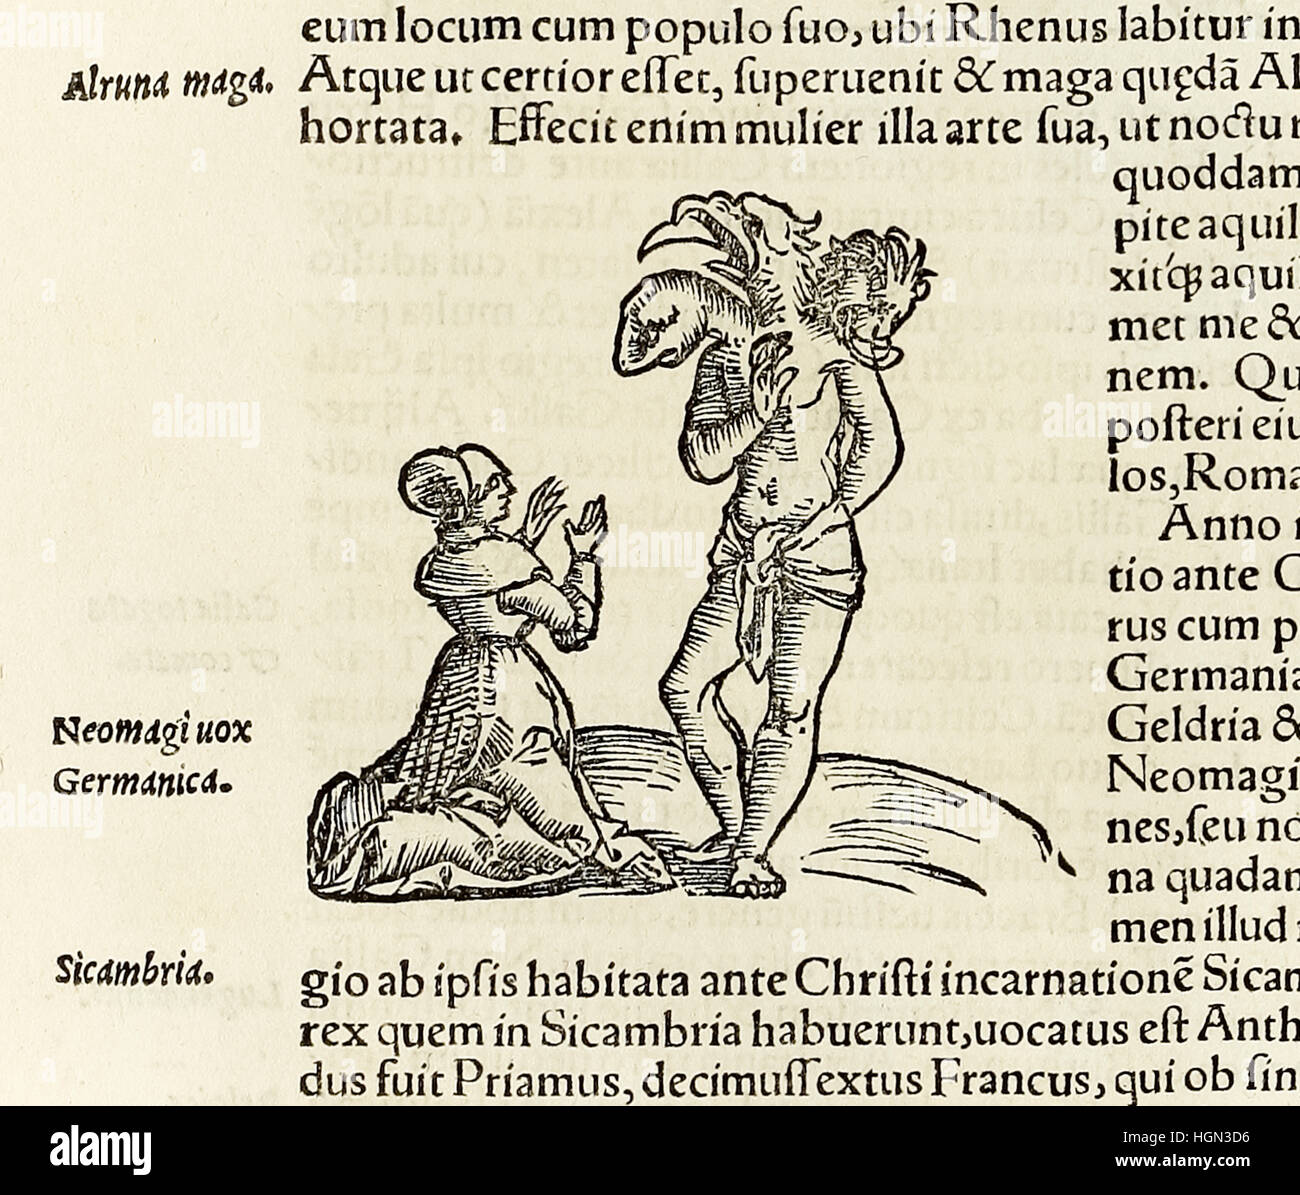 Eine Hexe beschwört einen drei Leitung Dämon, Holzschnitt von 1550-Ausgabe der "Cosmographia" von Sebastian Münster (1488-1552). Siehe Beschreibung für mehr Informationen. Stockfoto